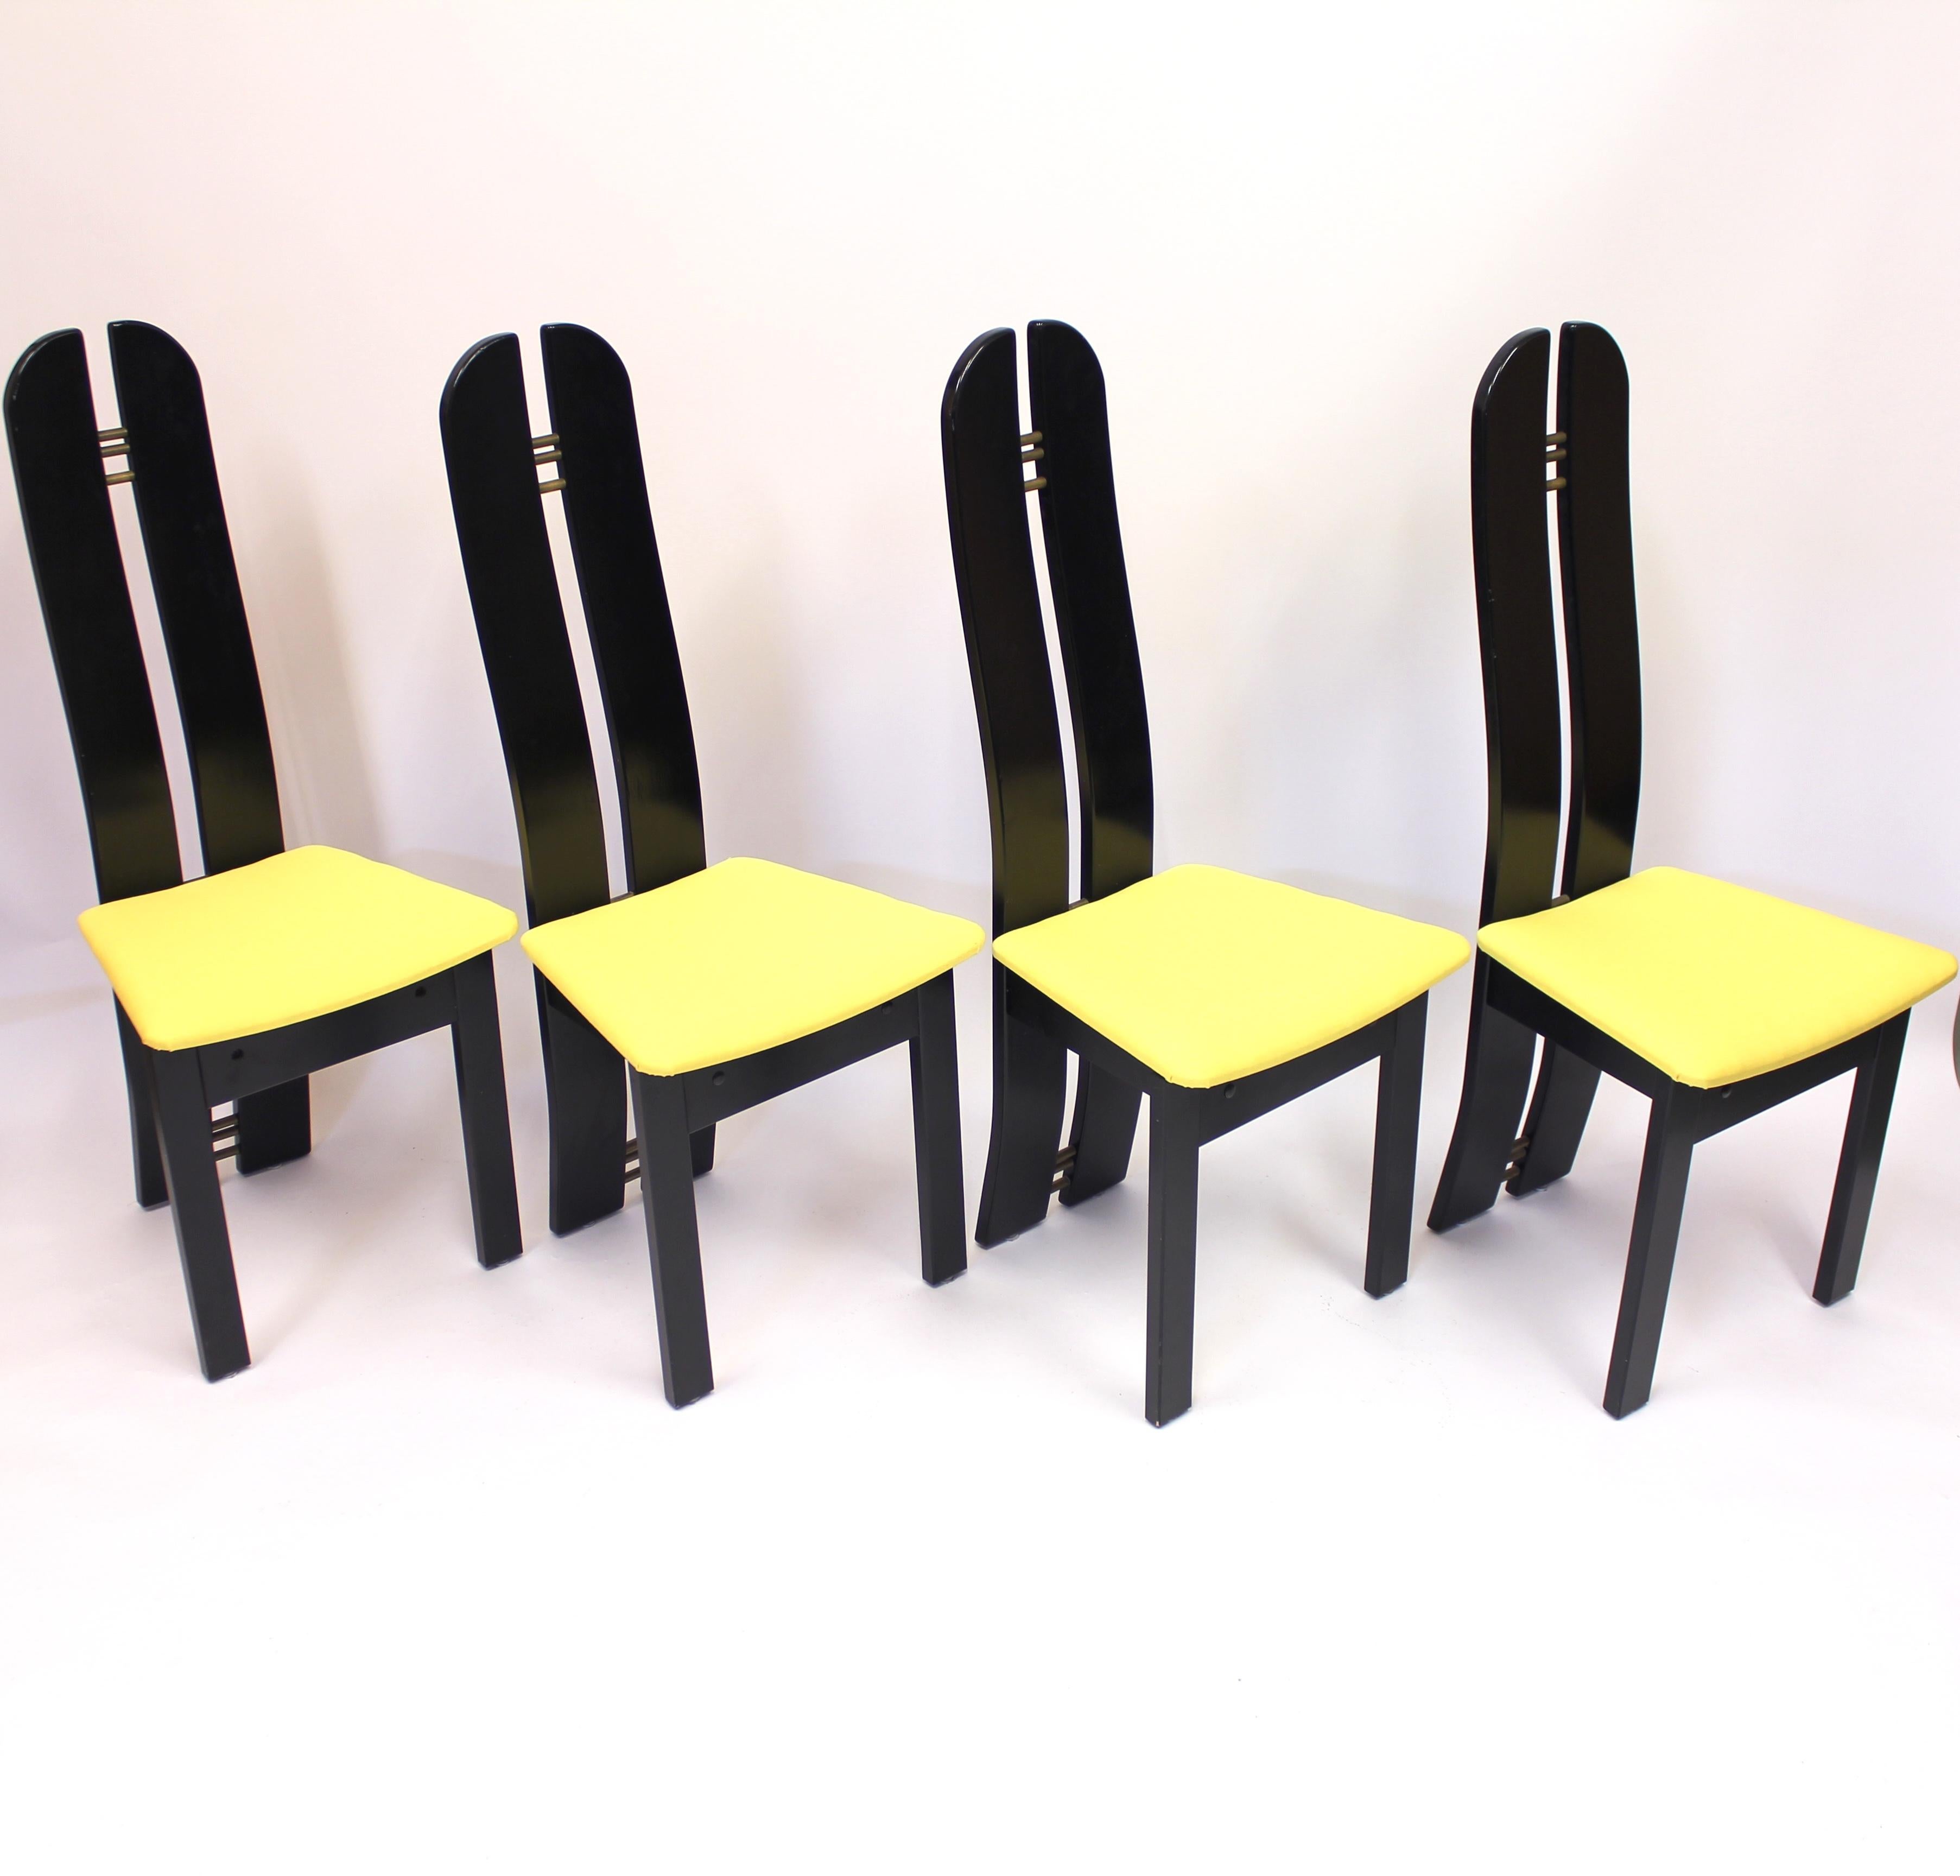 Post-Modern Set of 4 High Back Postmodern Chairs Form Mørkøv Møbelindustri Aps, 1980s For Sale